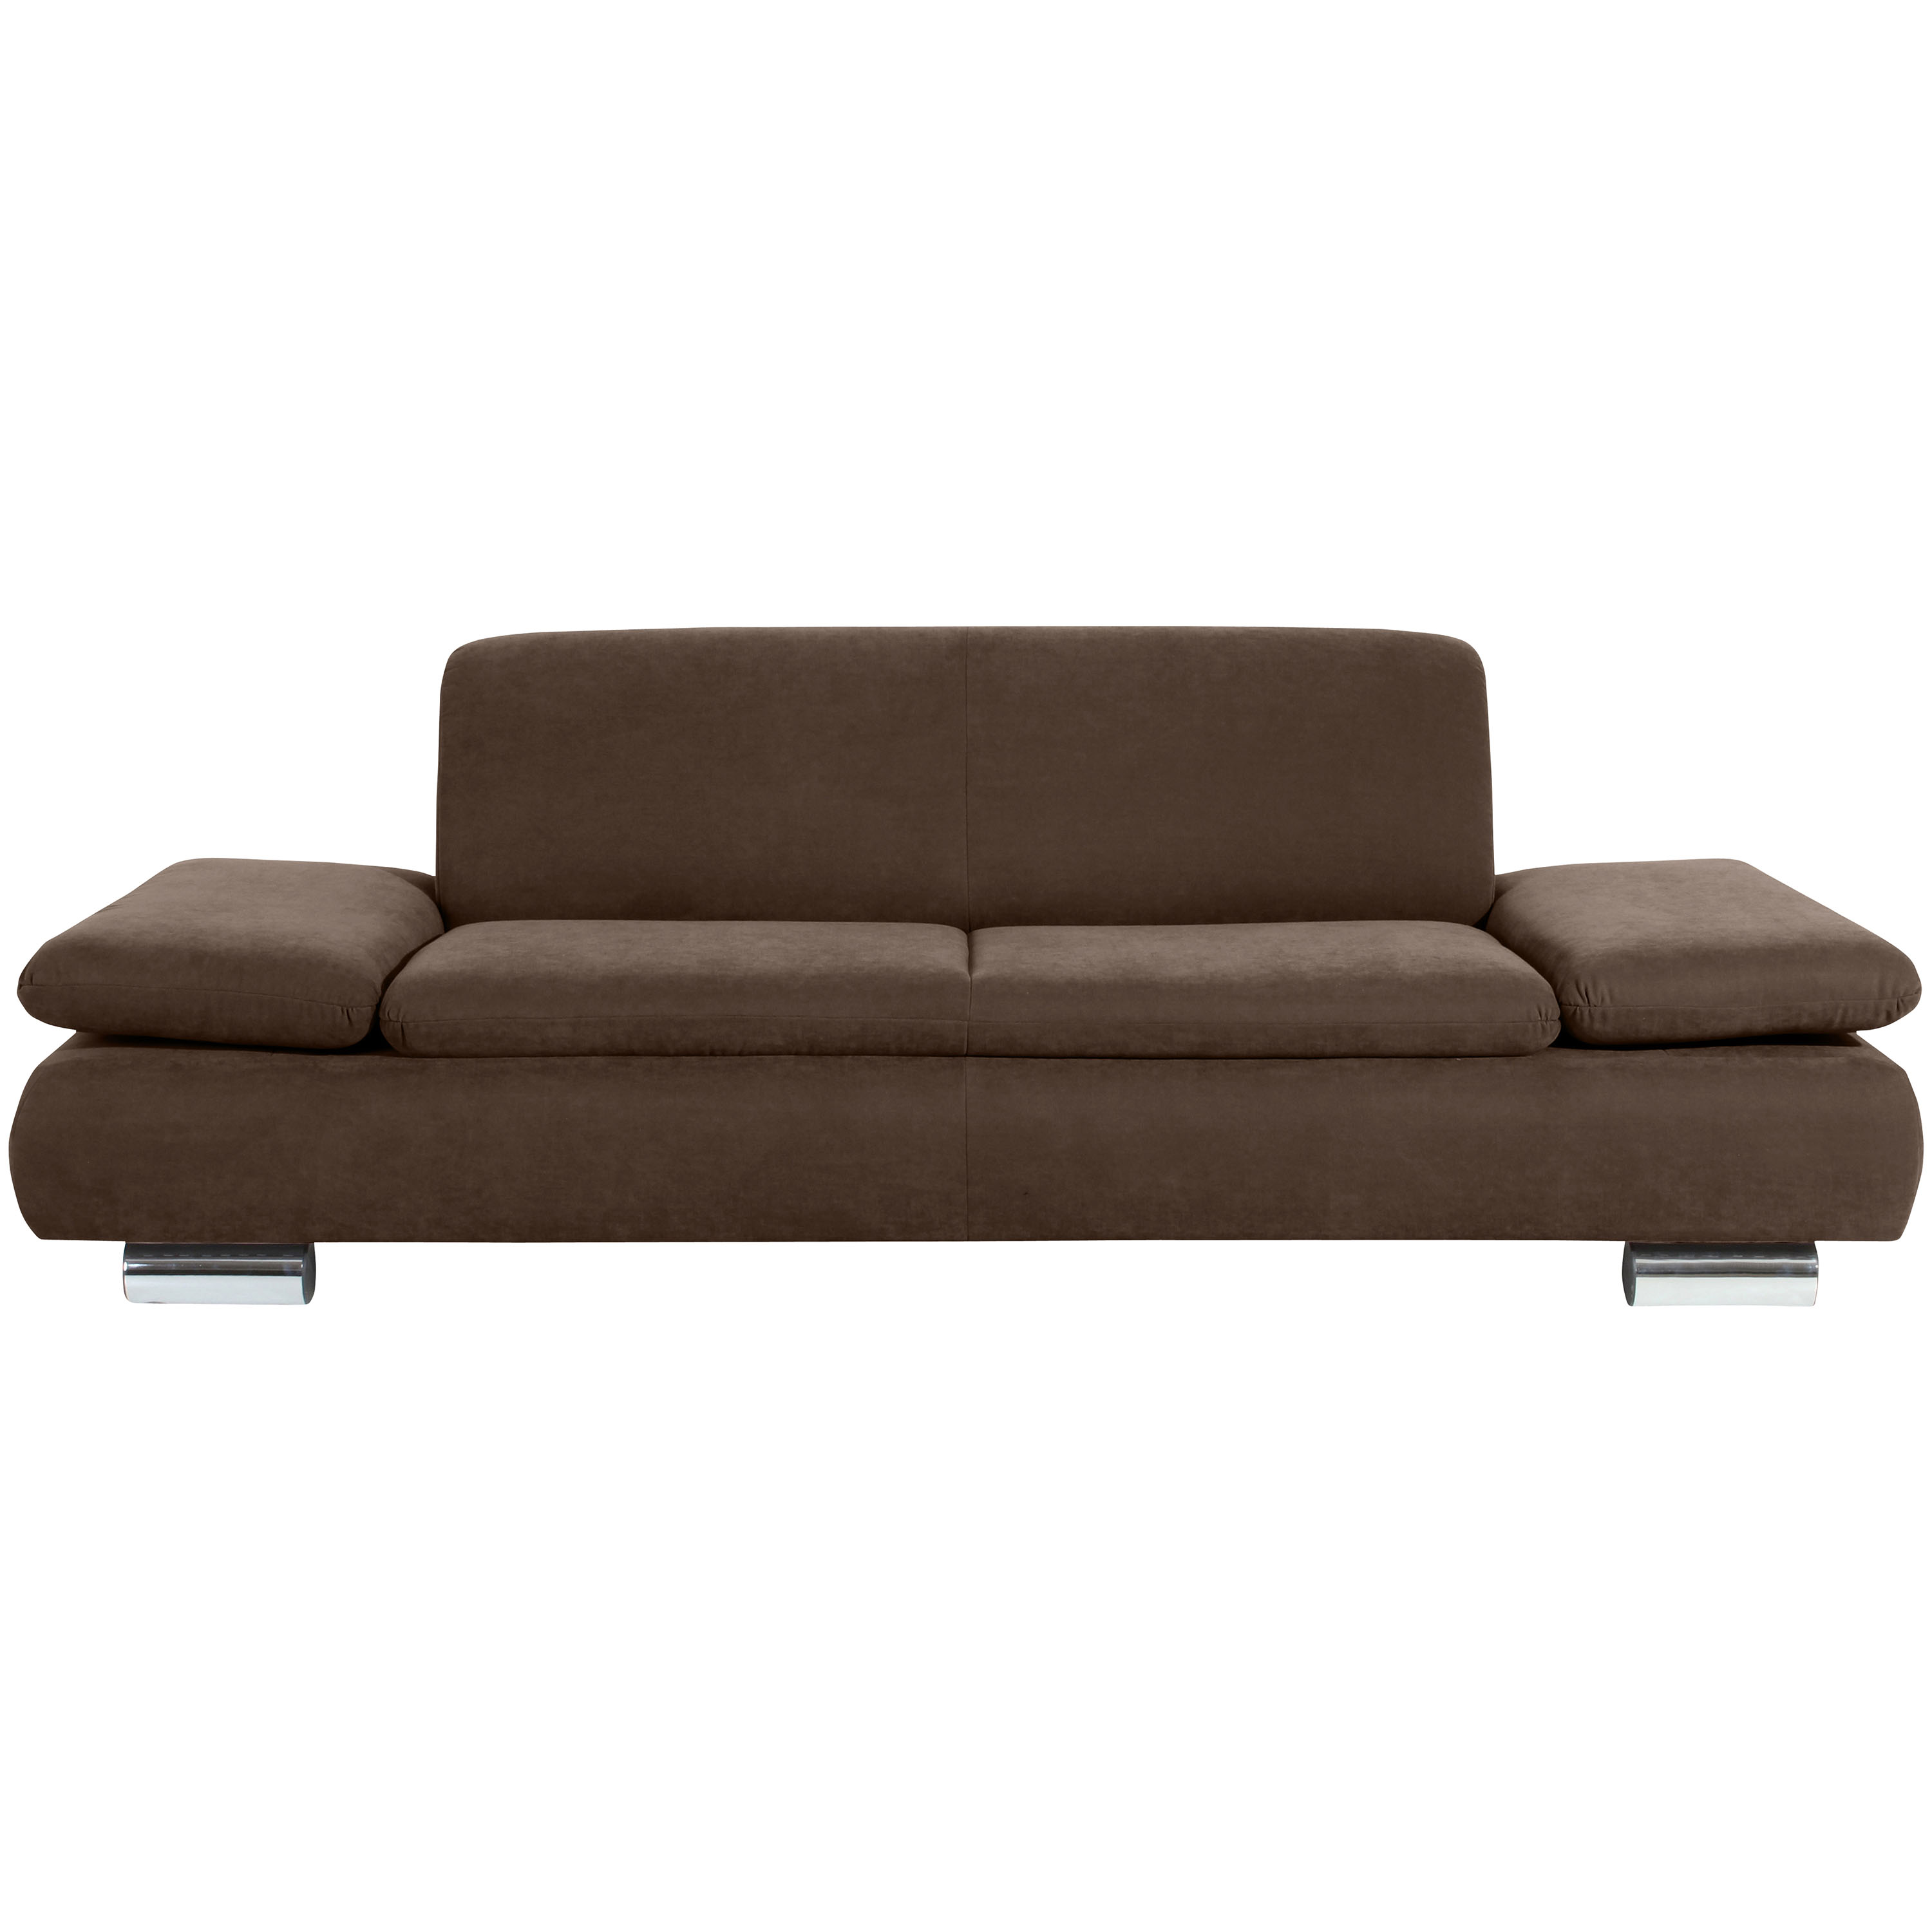 frontansicht von einem braunen 2,5-sitzer sofa mit verchromten metallfüssen